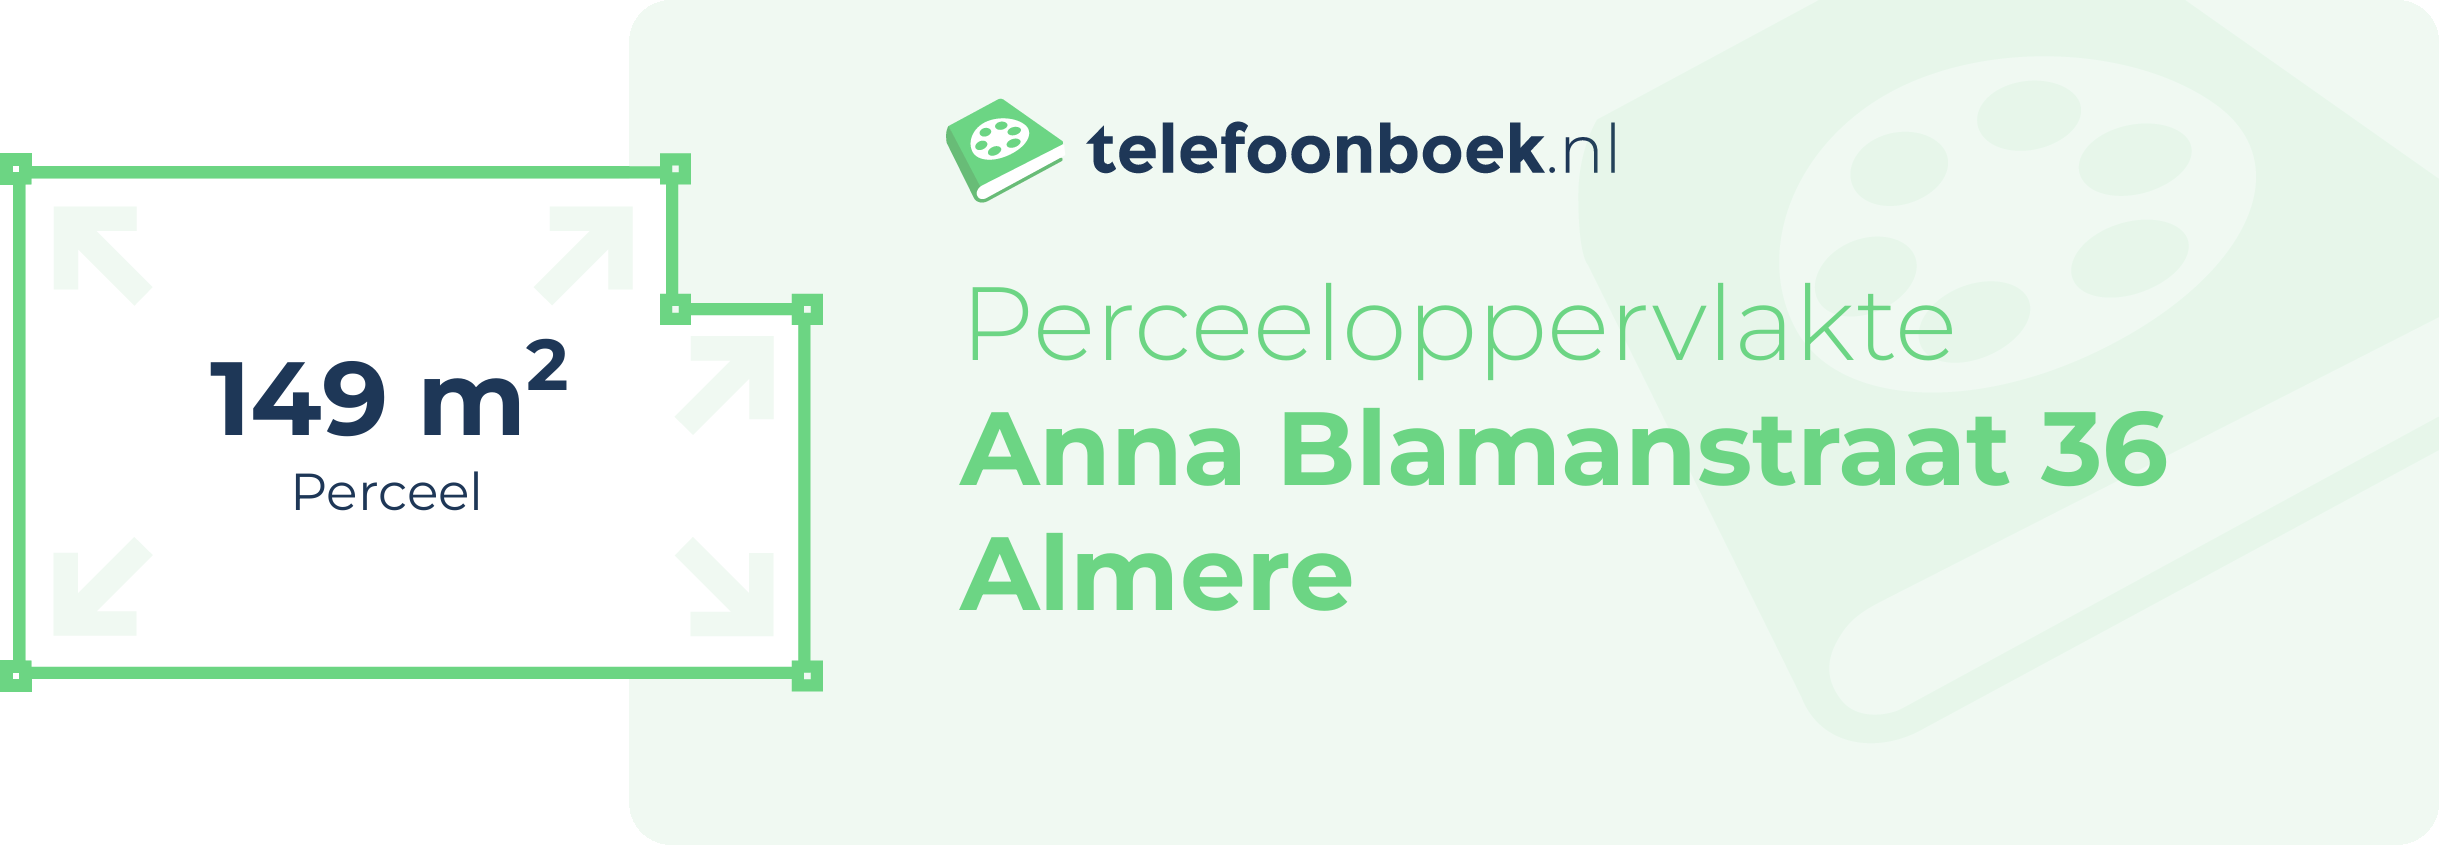 Perceeloppervlakte Anna Blamanstraat 36 Almere